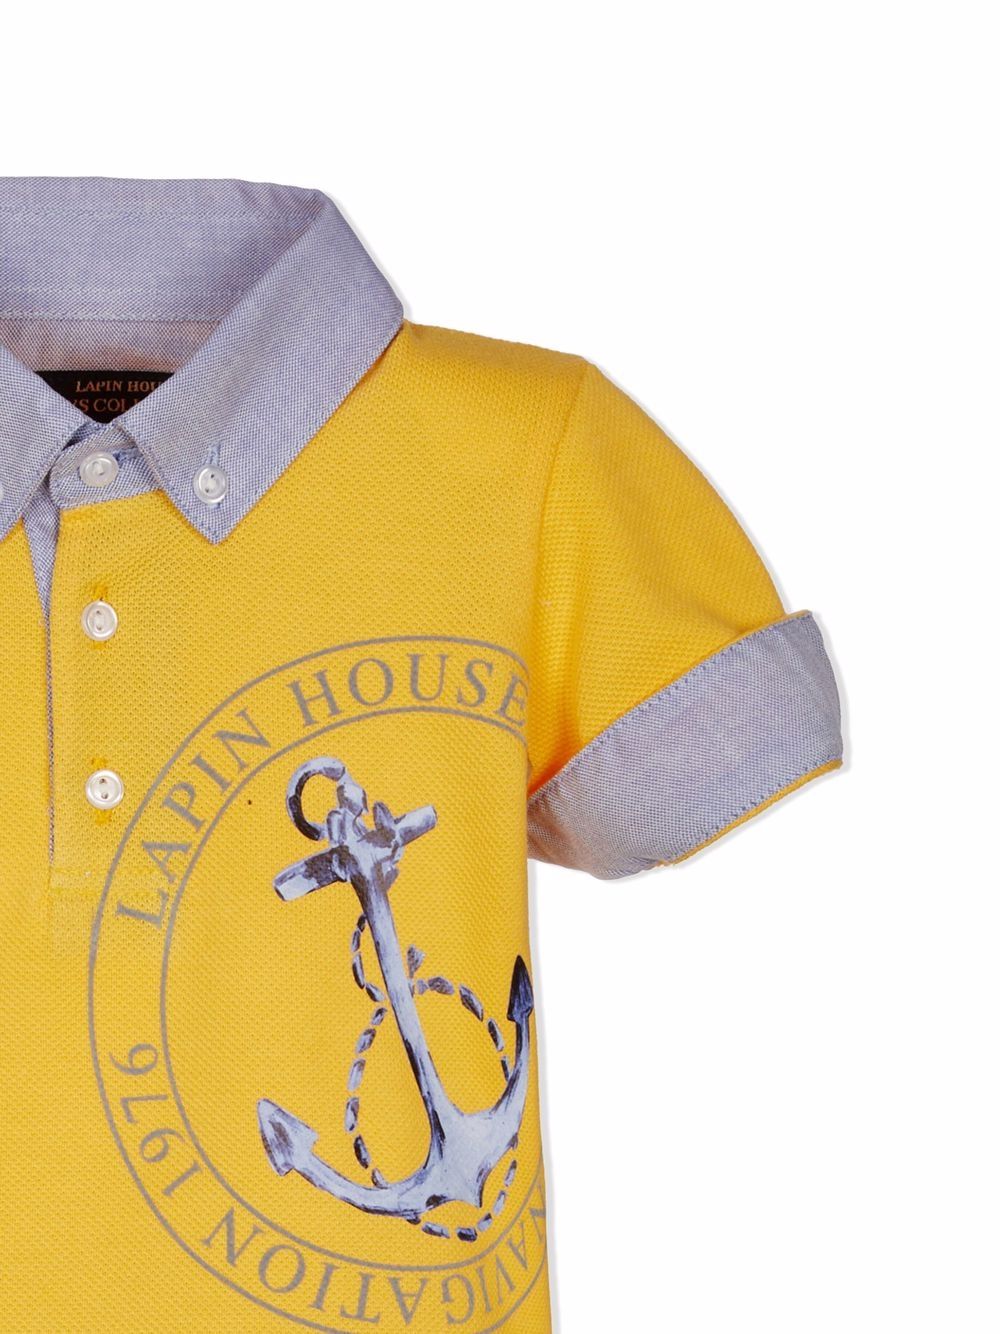 фото Lapin house рубашка с короткими рукавами и логотипом